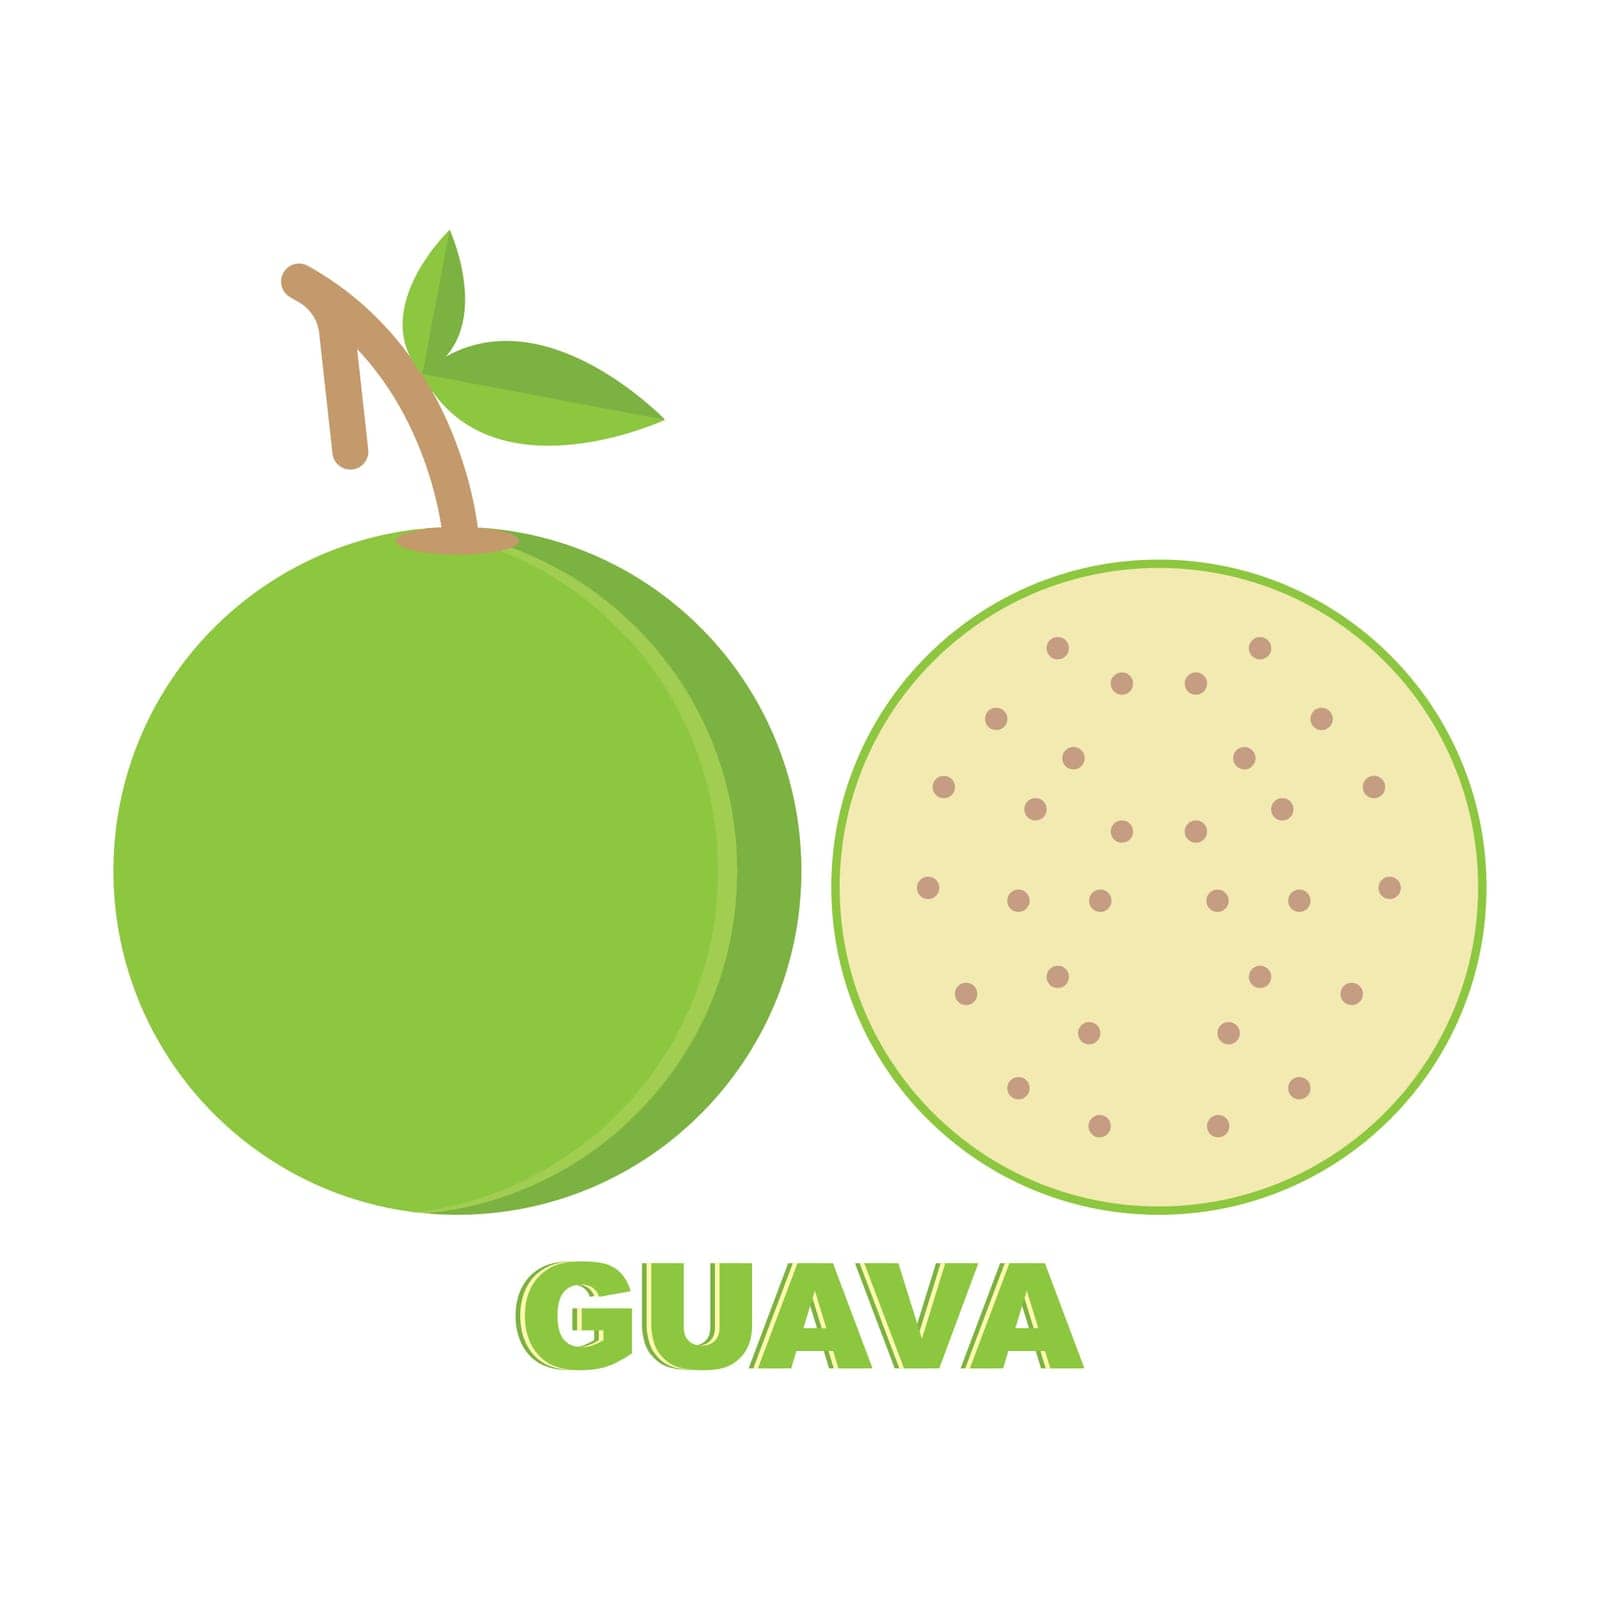 Guava icon design illustration logo template